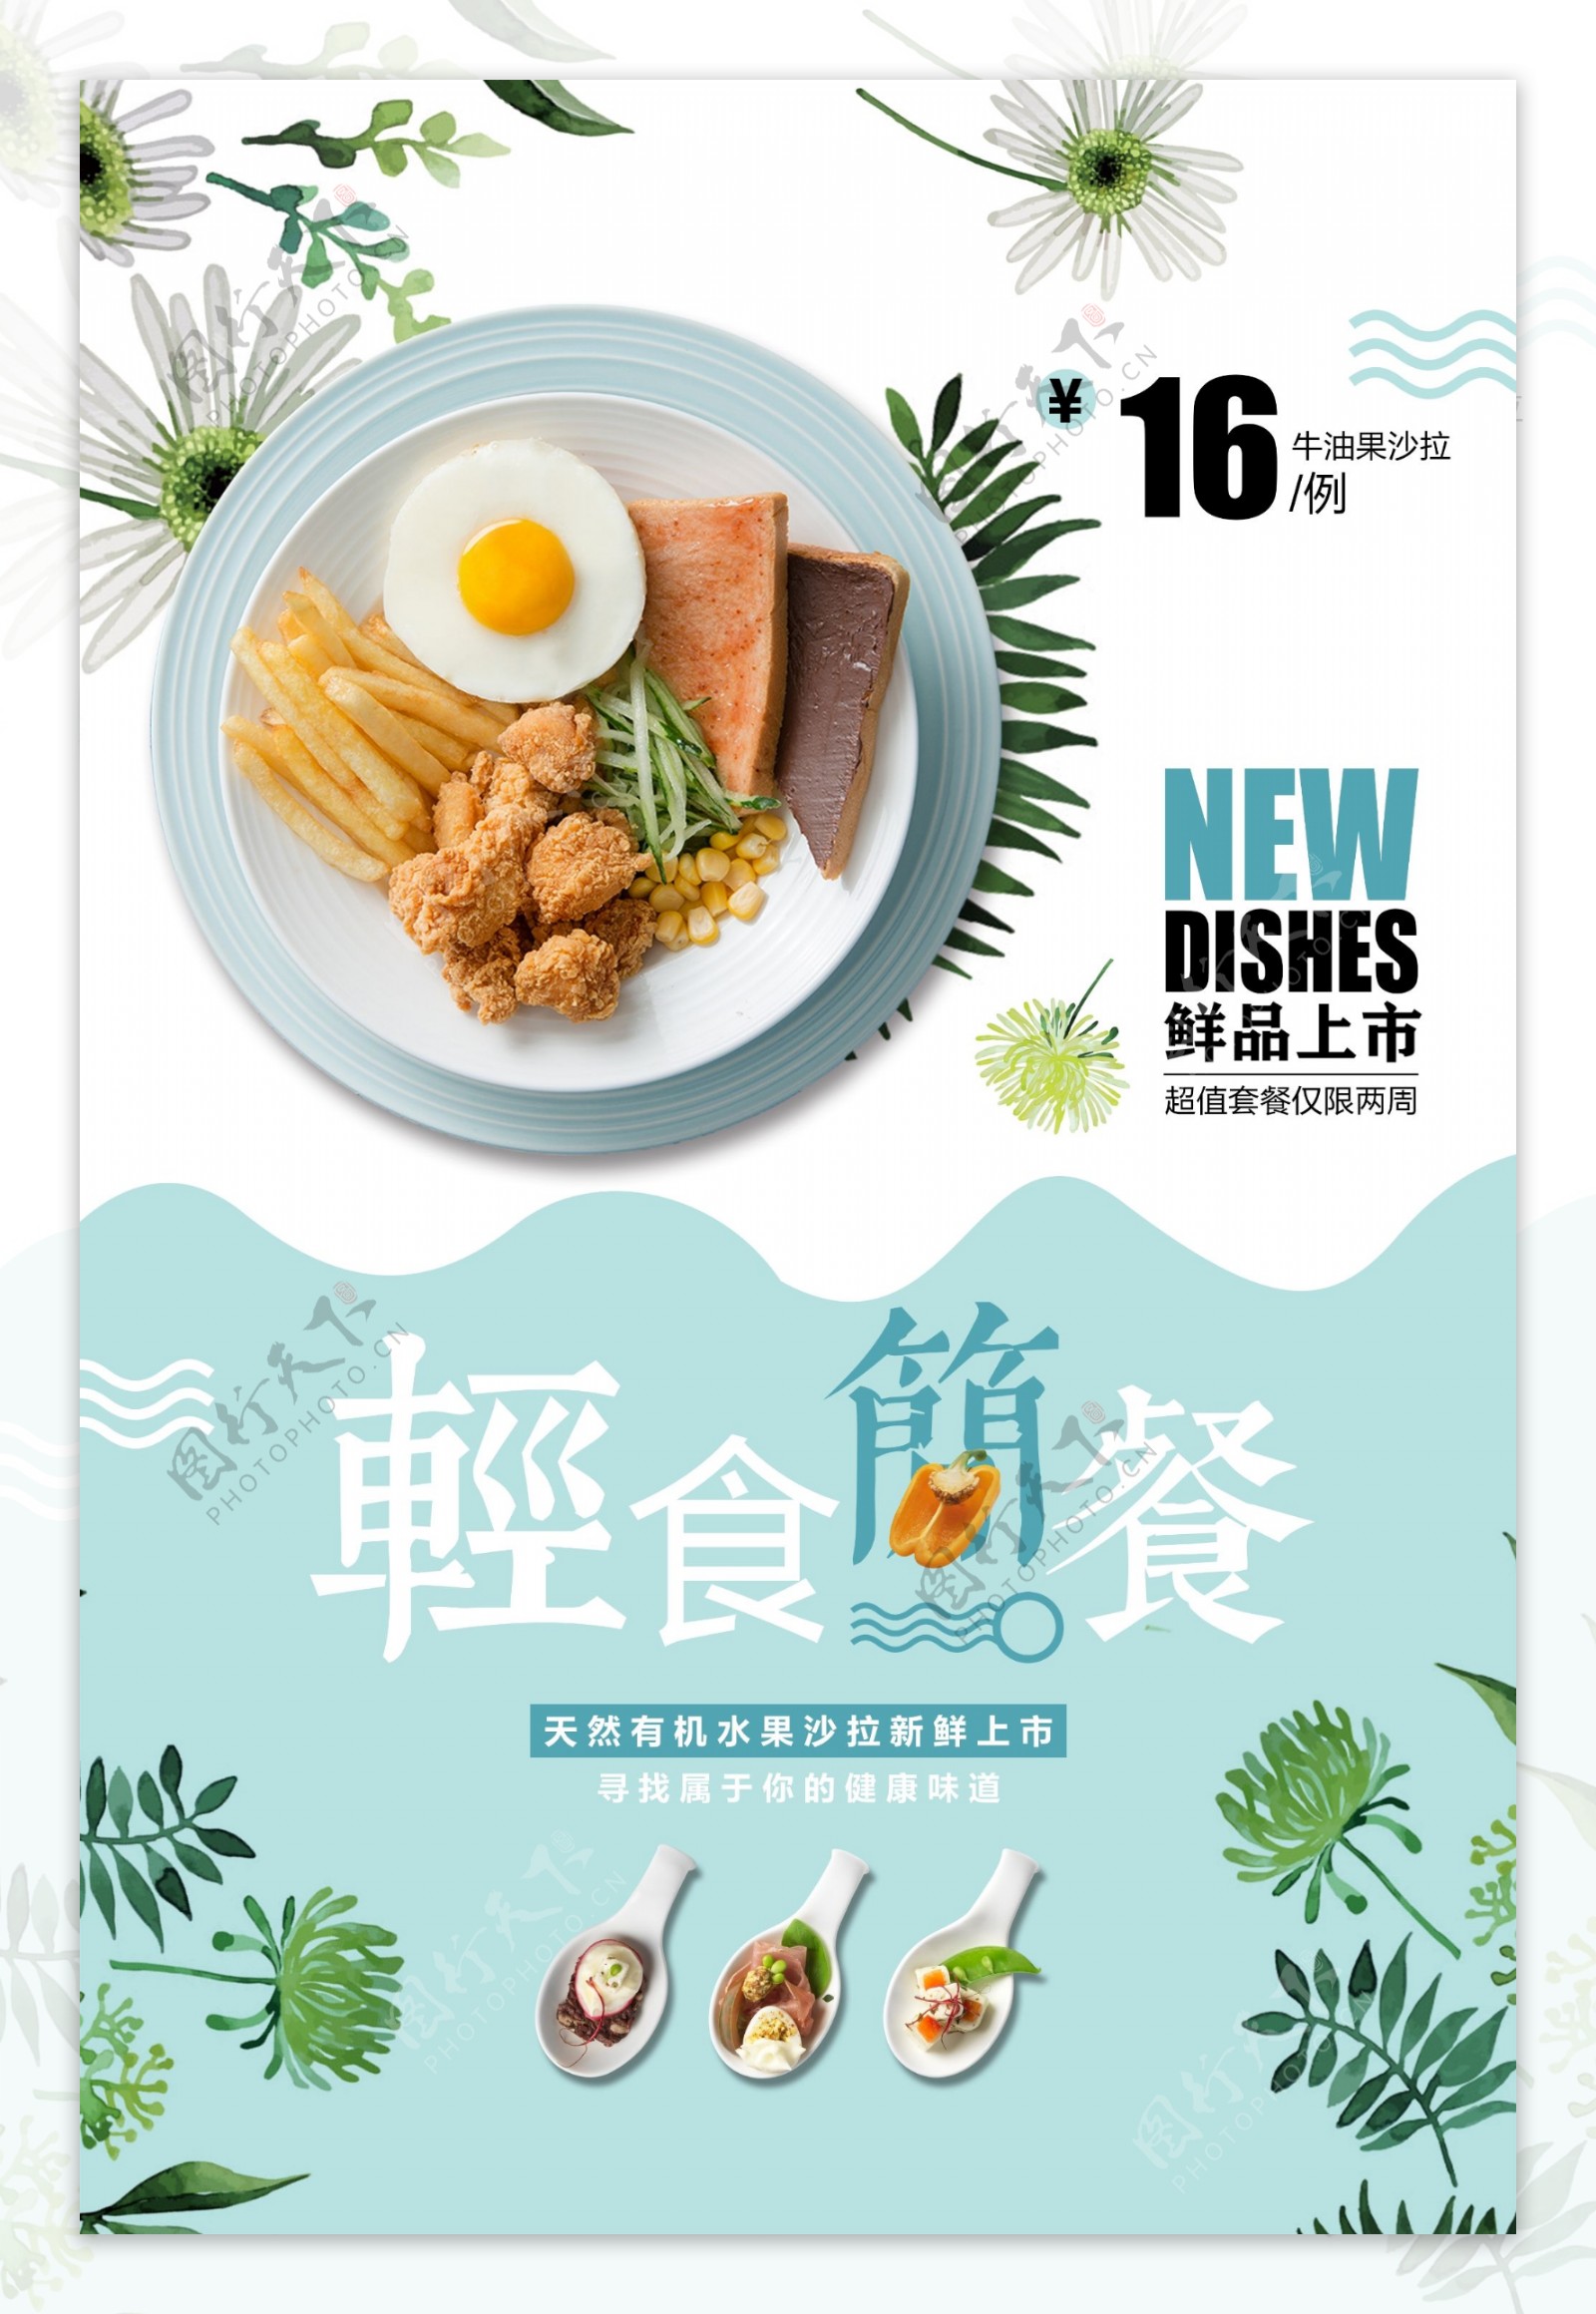 轻食简餐美食促销活动宣传海报